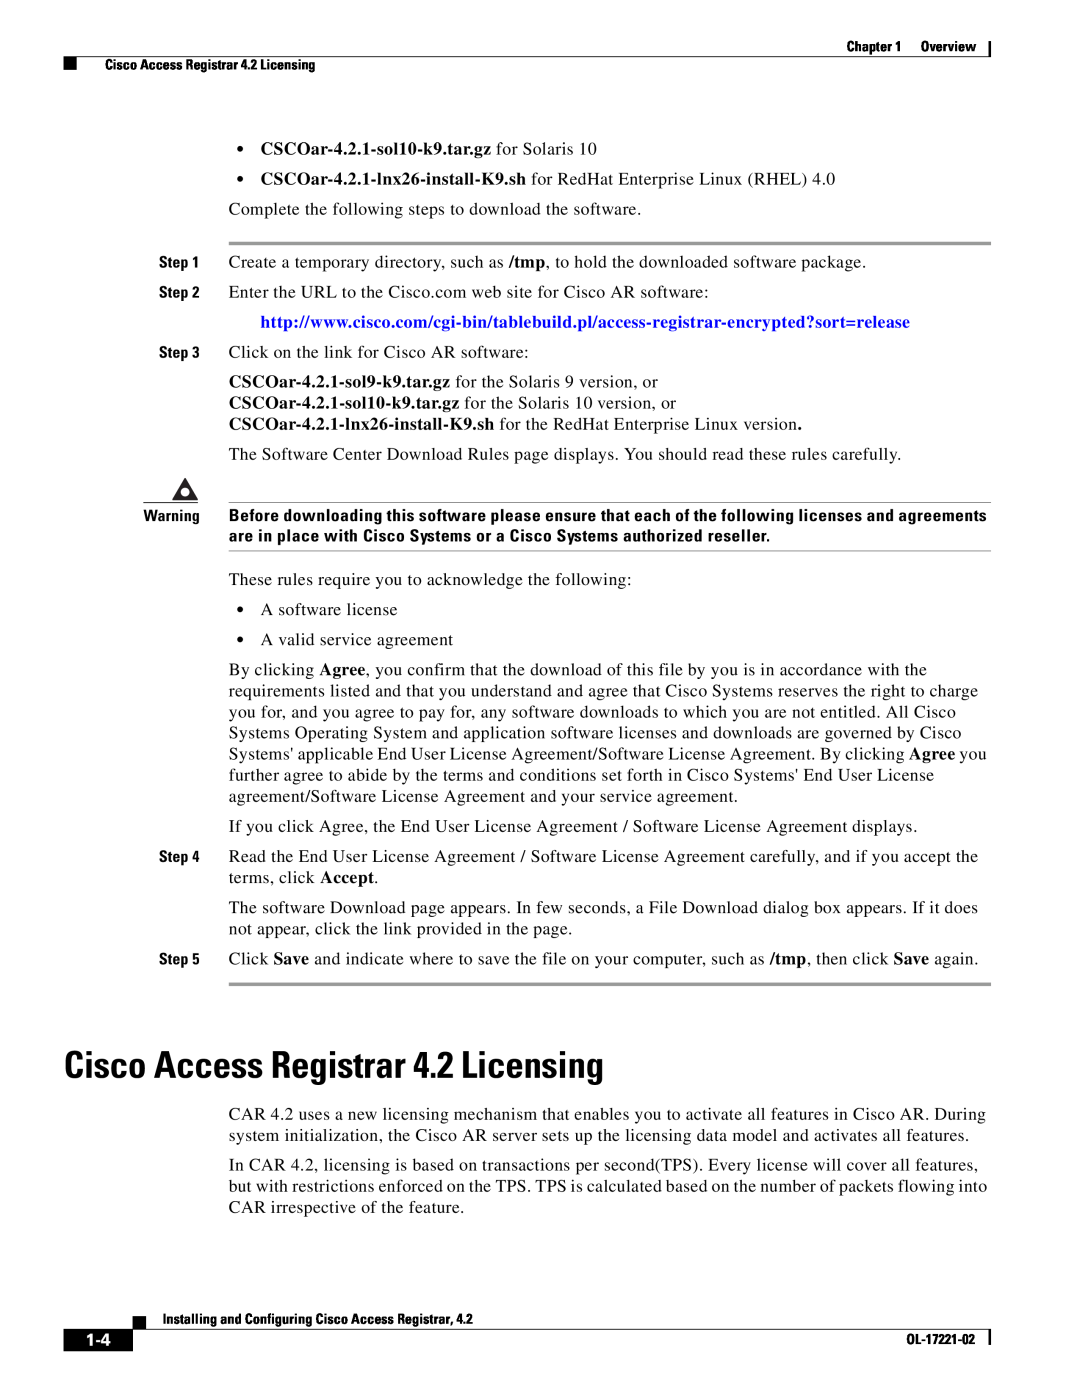 Cisco Systems manual Cisco Access Registrar 4.2 Licensing, CSCOar-4.2.1-sol10-k9.tar.gz for Solaris 